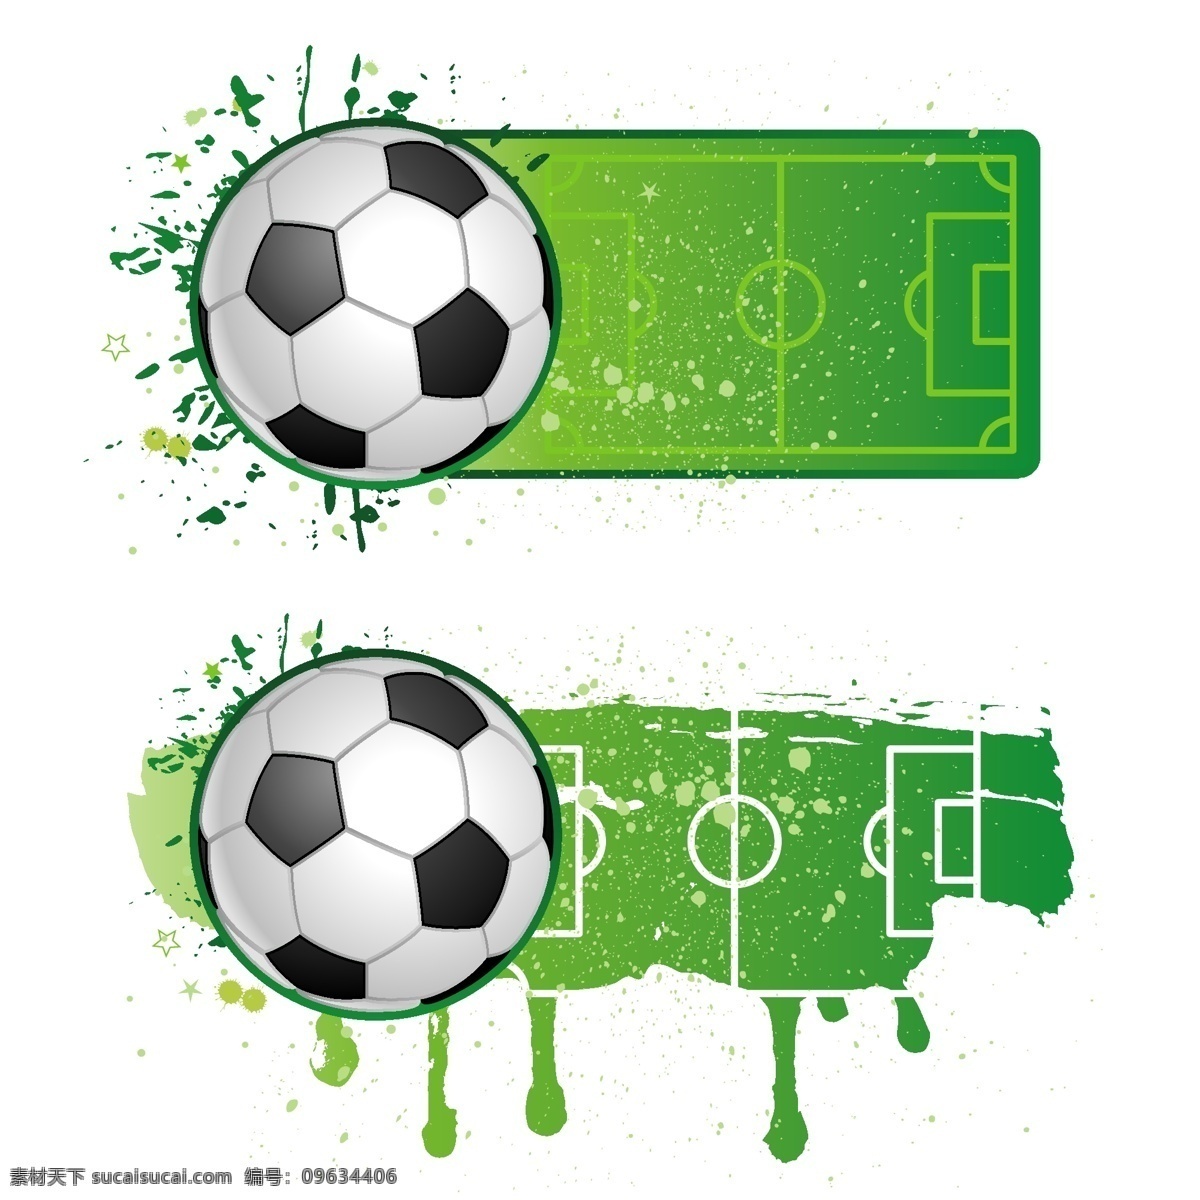 足球广告背景 足球广告 绿色背景 足球场背景 足球 体育运动 足球运动 生活百科 矢量素材 白色